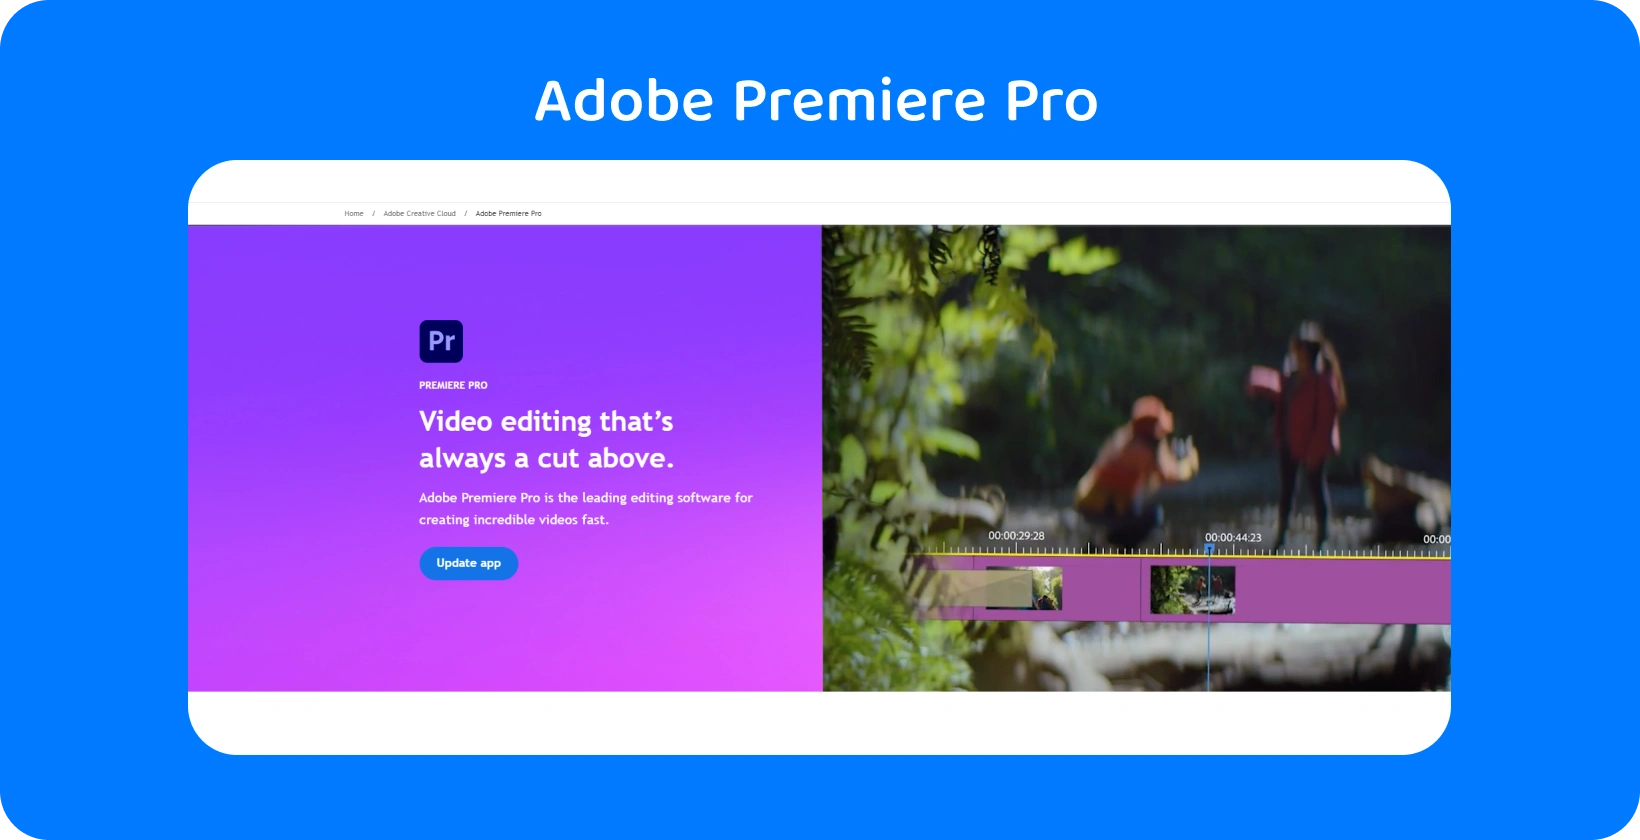 Interfaccia di Adobe Premiere Pro che mostra le sue funzionalità avanzate di editing video, ideale per modifiche rapide e precise.